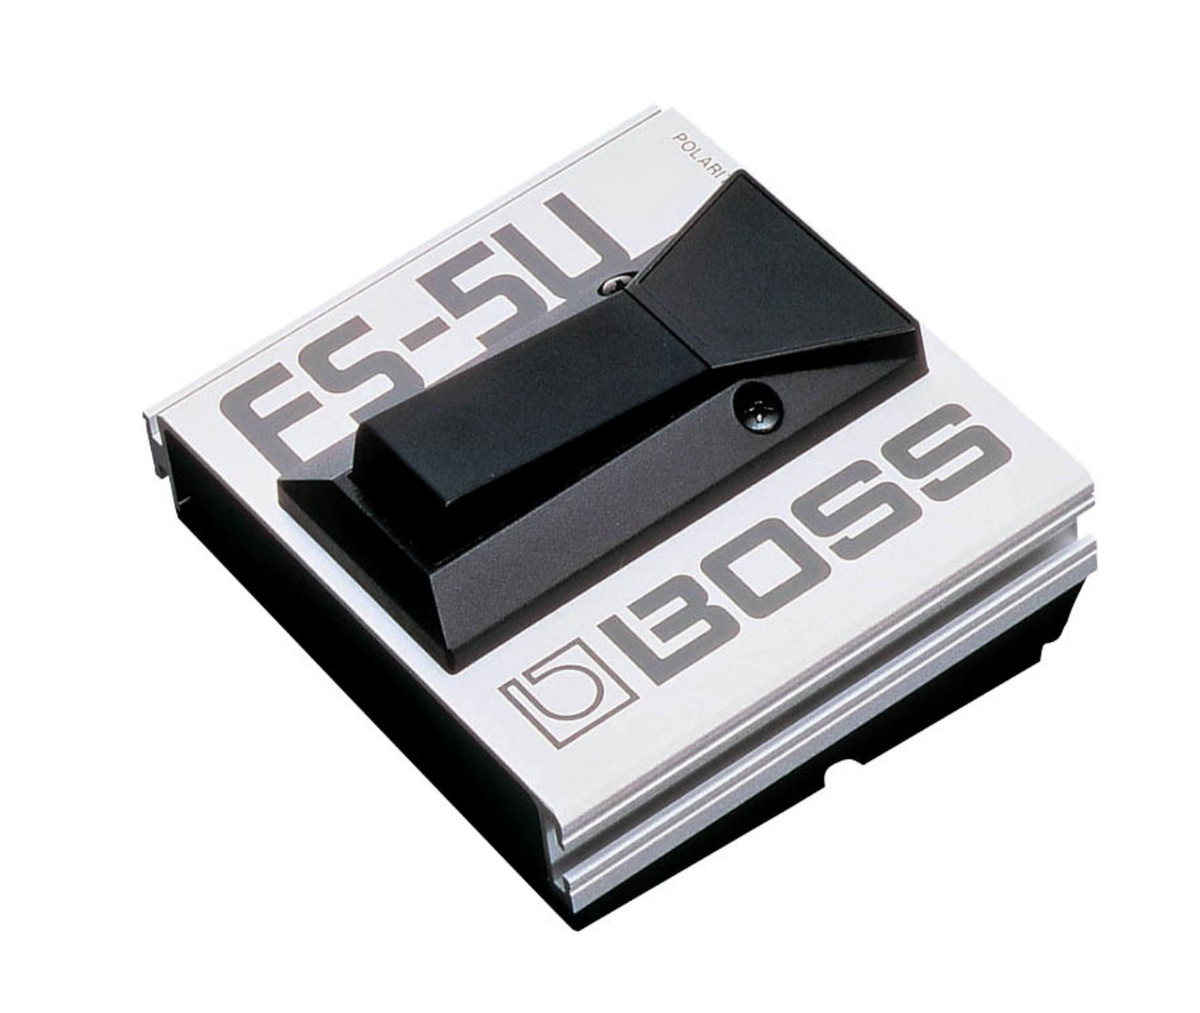 BOSS FS-5U Best Foot Switch Pedal Momentary Unlatch-type Footswitch